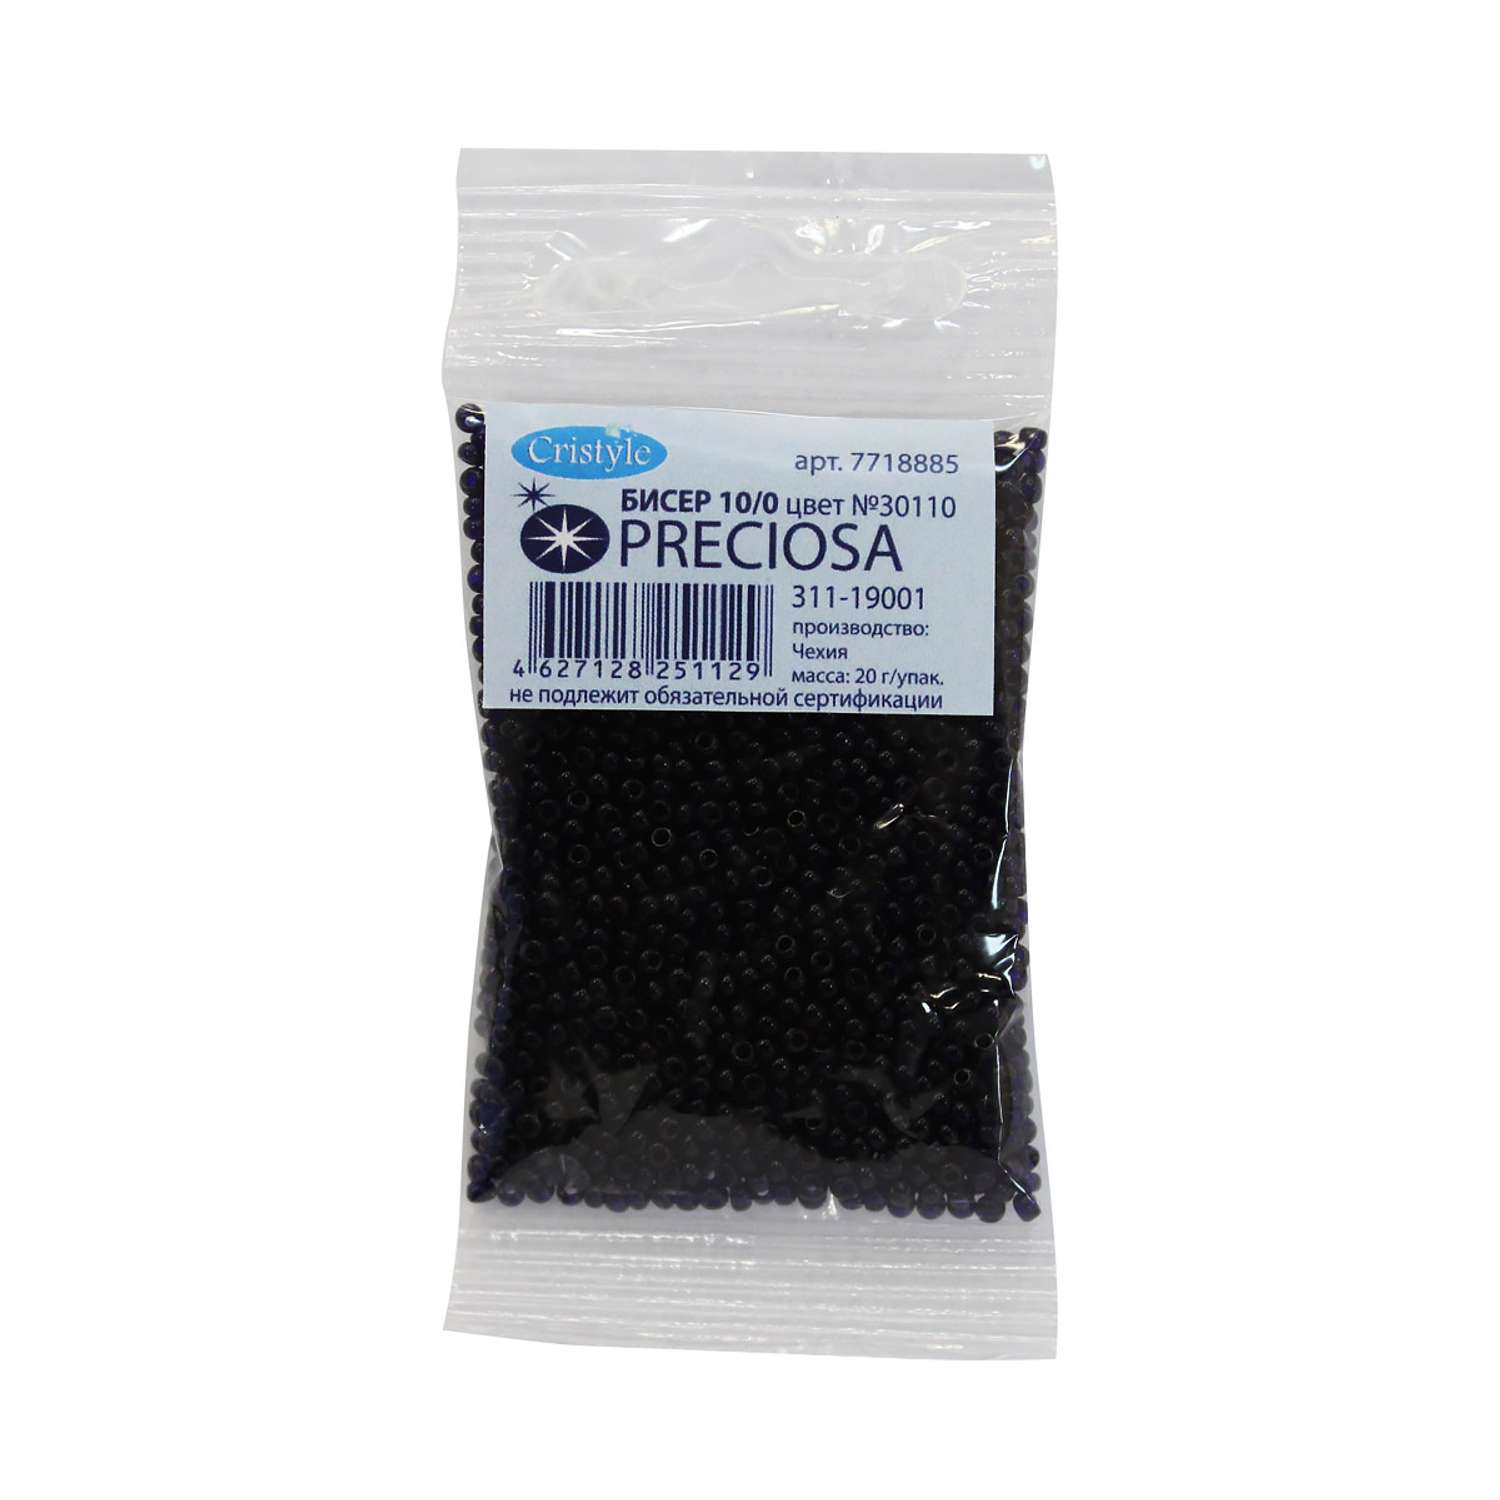 Бисер Preciosa чешский прозрачный 10/0 20 гр Прециоза 30110 темно-синий - фото 3